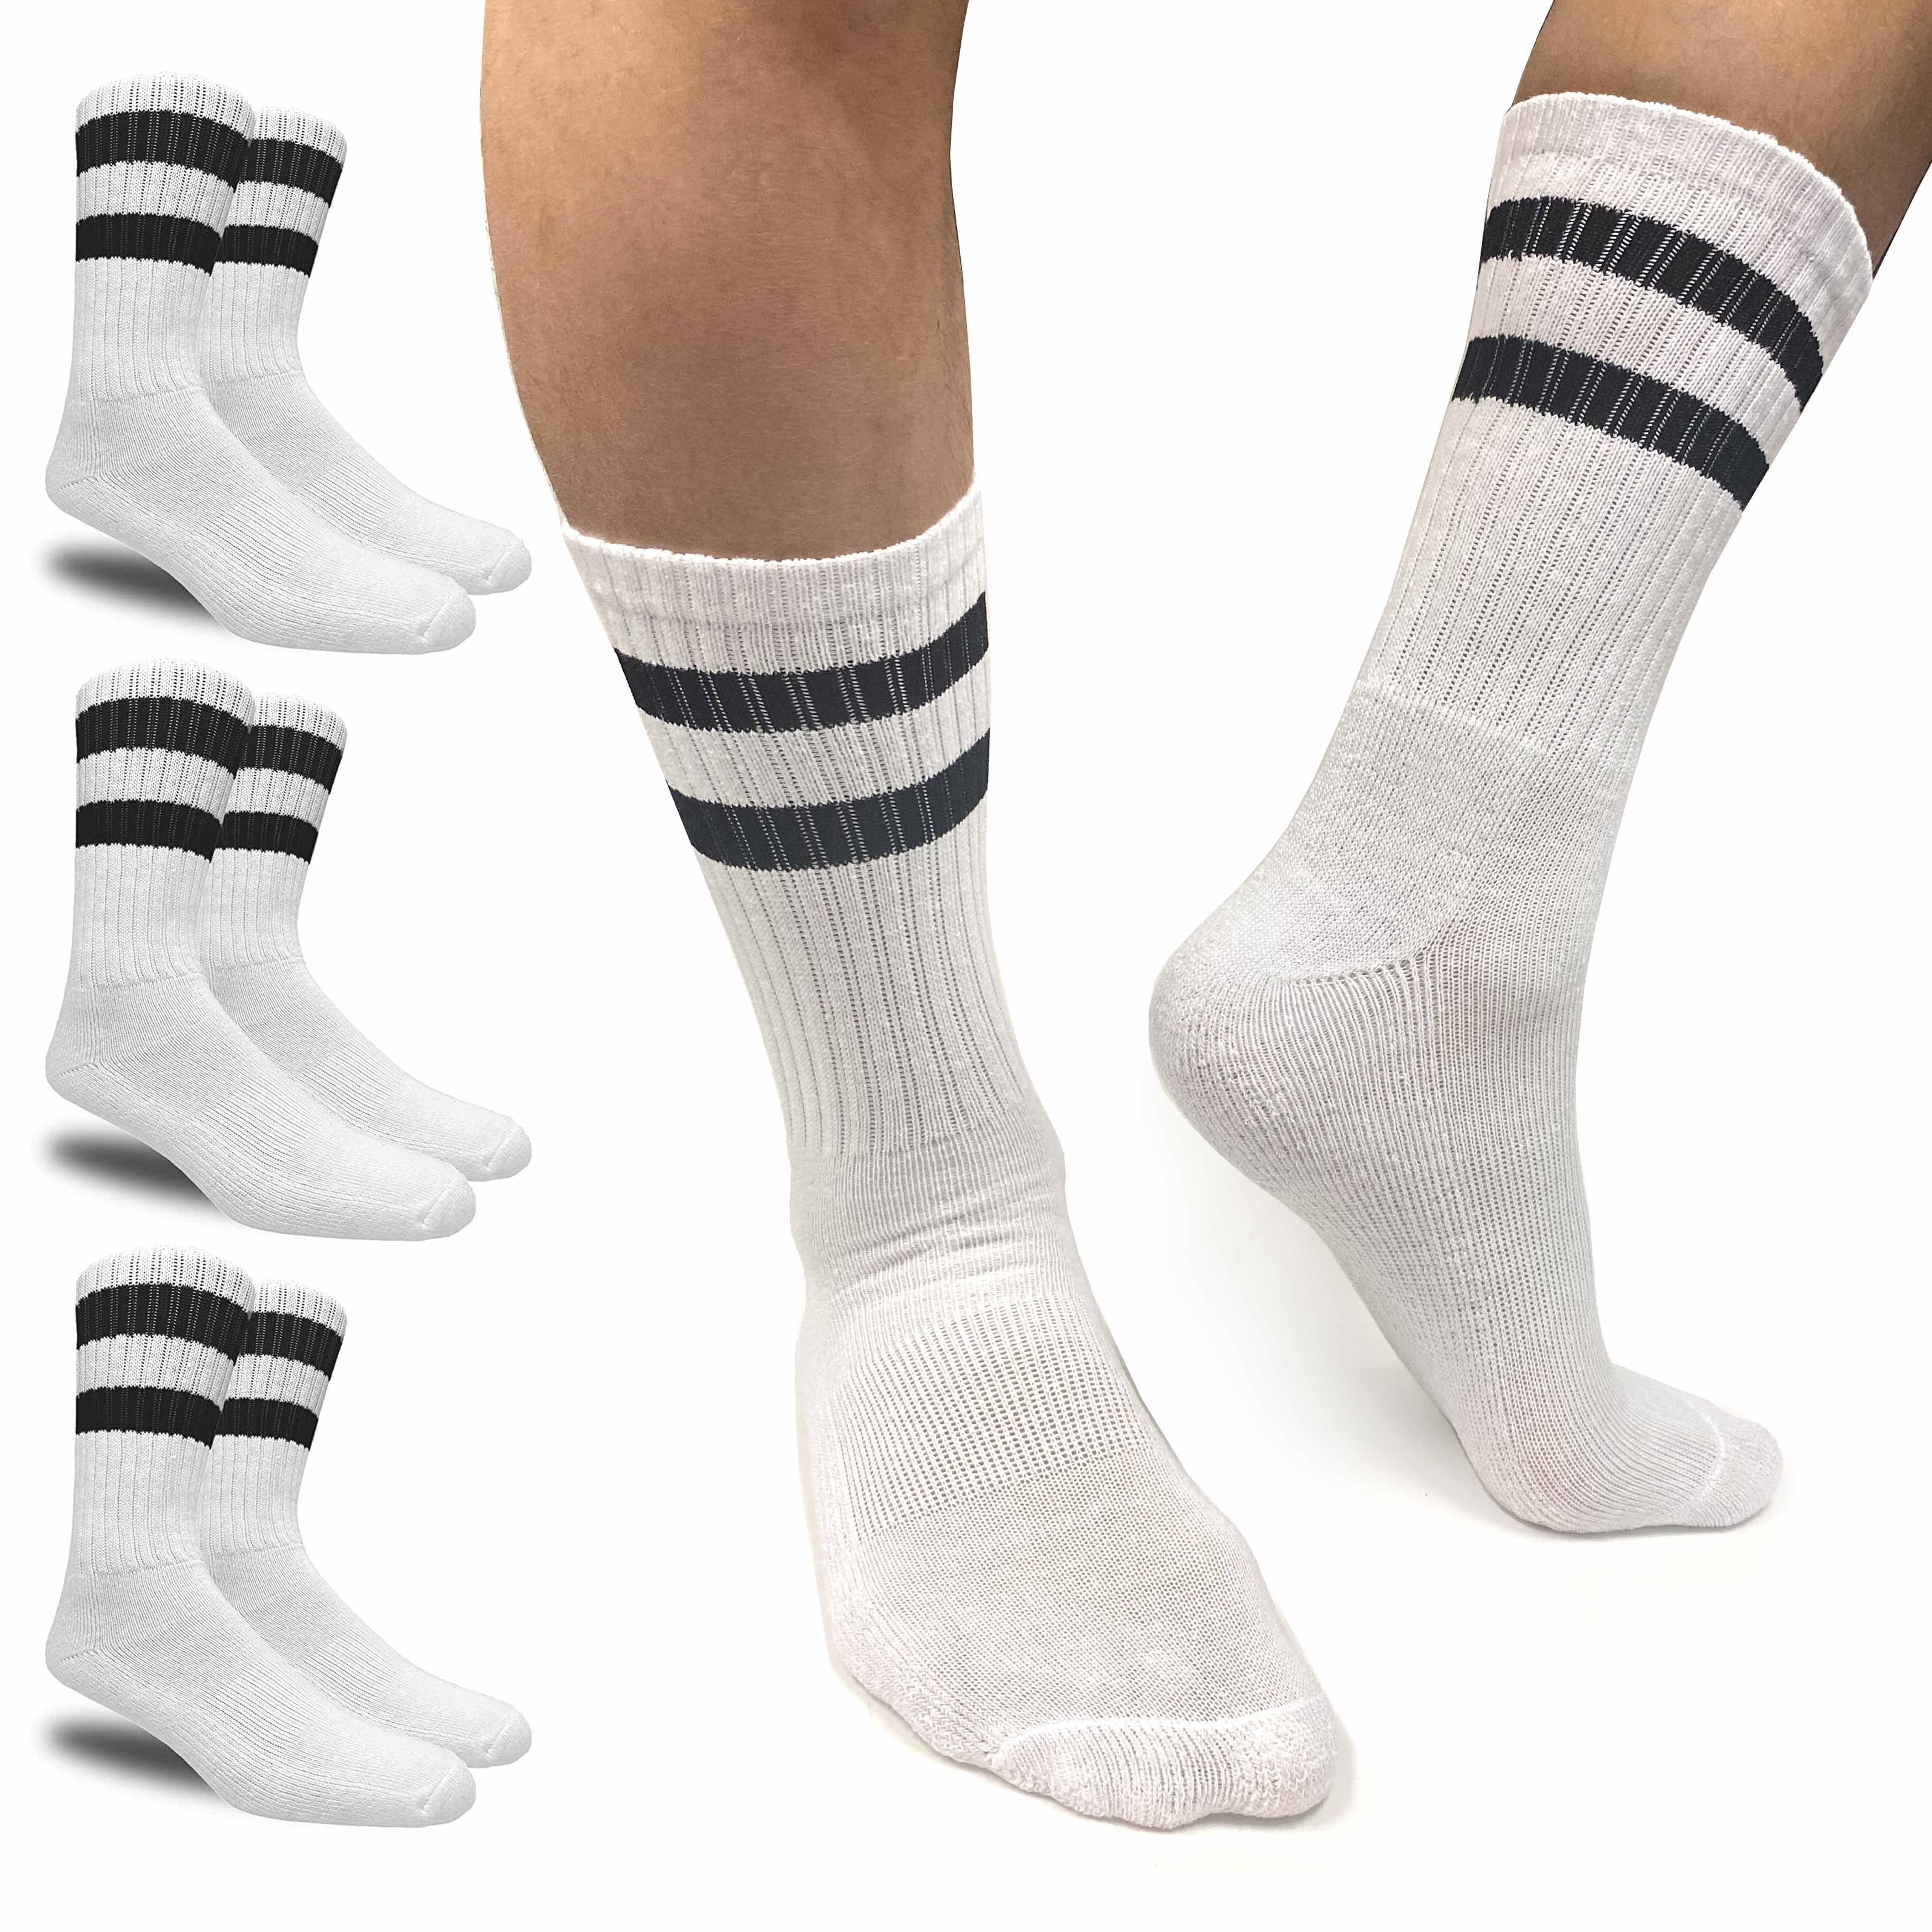  Non Slip Toddler Socks 12 Pairs Infant Baby Kids Grip Socks  For Boy Girls Anti Skid Ankle Socks For 5-7 Year Children